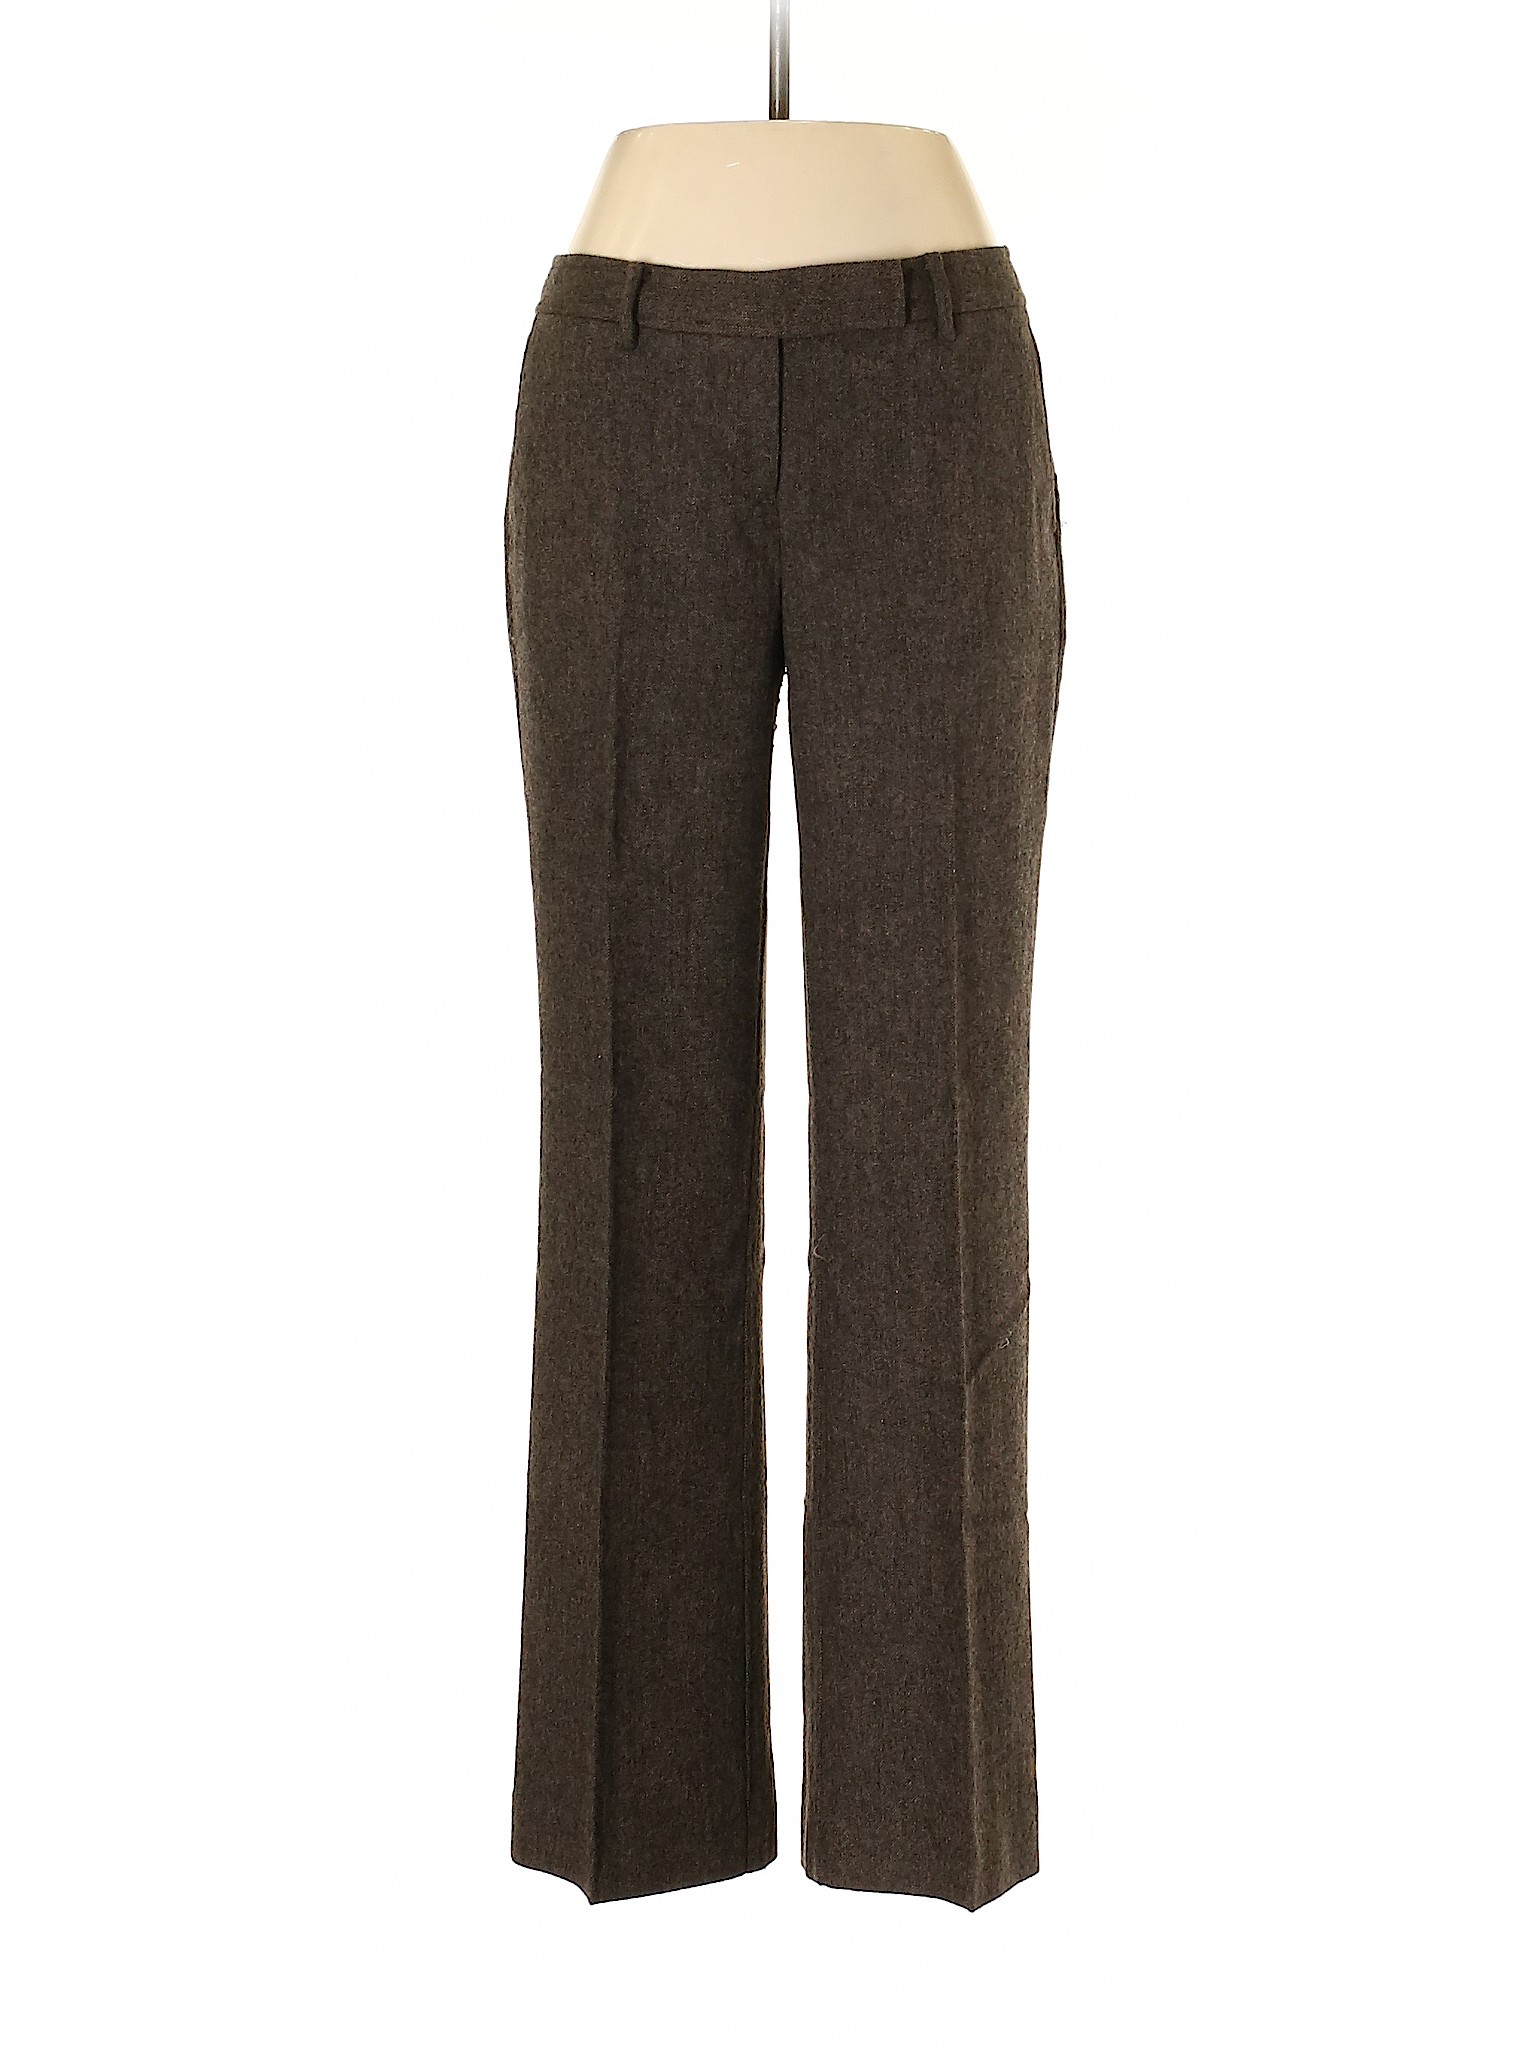 Ann Taylor LOFT Outlet Women Brown Dress Pants 2 Petites | eBay